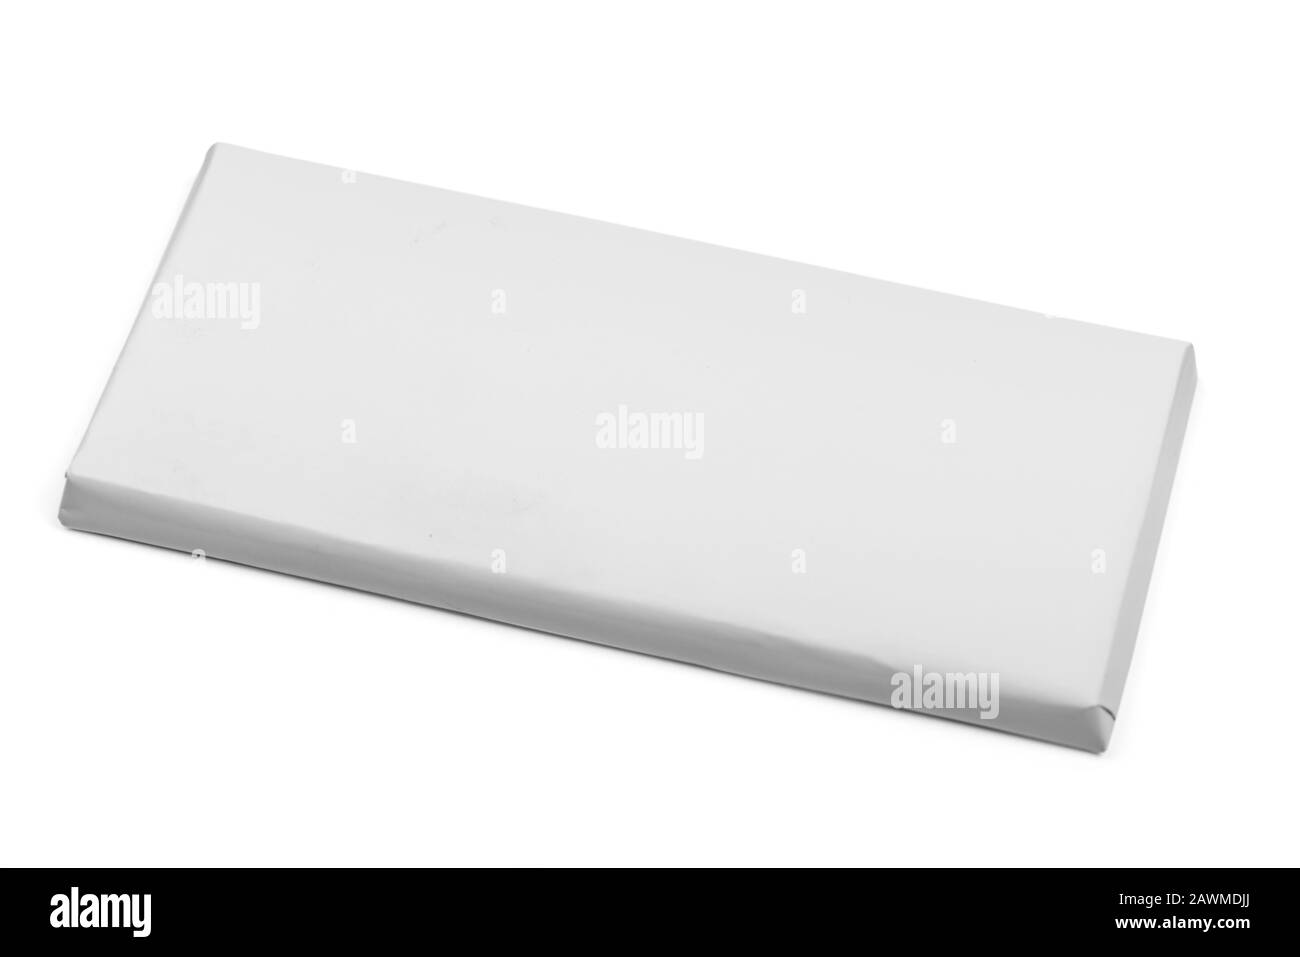 Confezione vuota copertina modello di scatola della barra di cioccolato mockup isolato su sfondo bianco con percorso di ritaglio Foto Stock